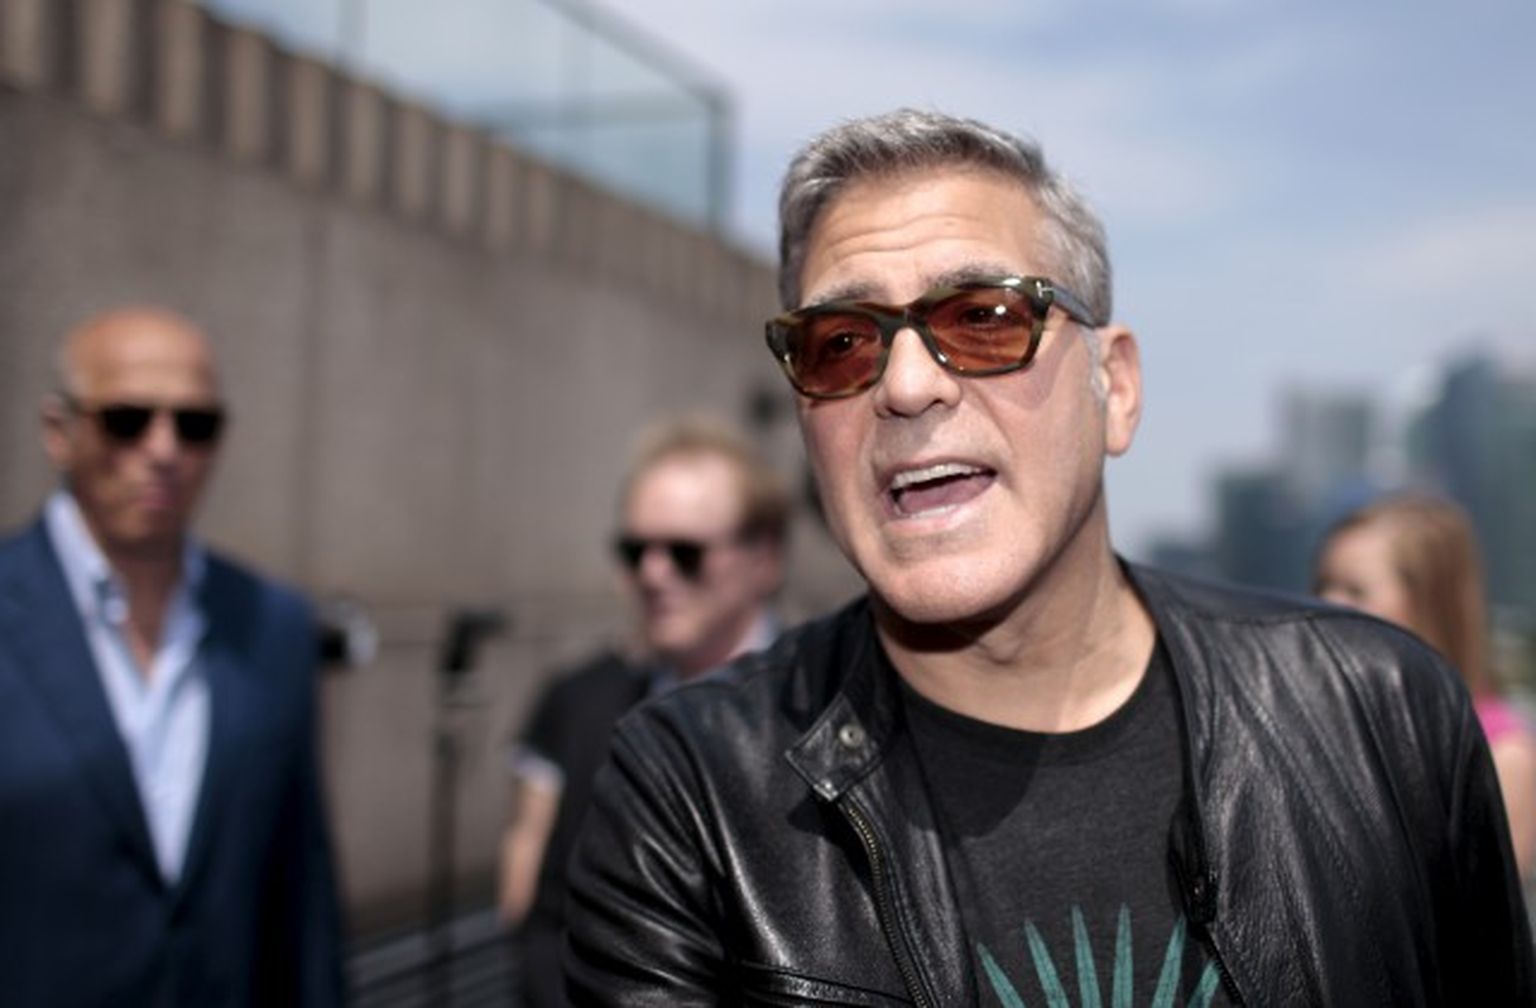 Džordžs Klūnijs (George Clooney) filmas "Rītdienas zeme" ("Tomorrowland") pirmizrādē Šanhajā